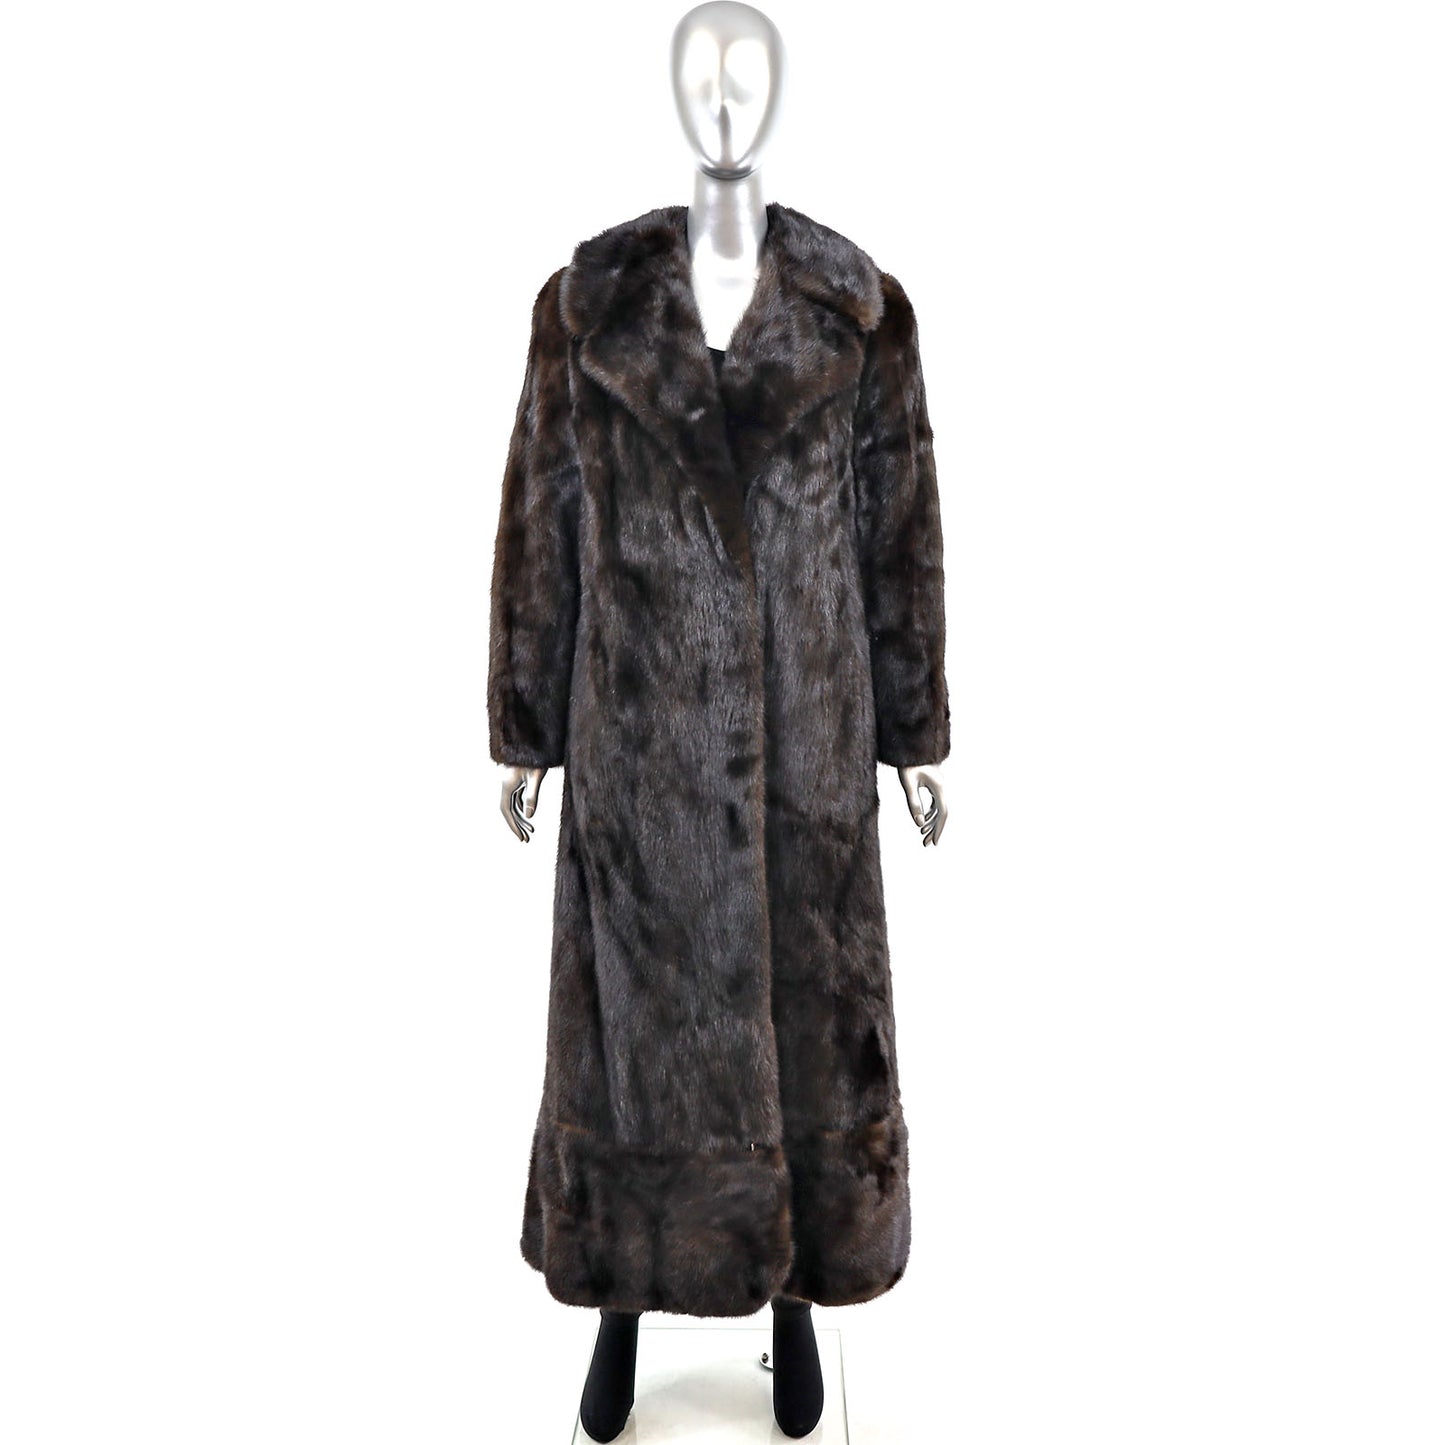 Black Mink Coat with Zip Off Hem- Size S